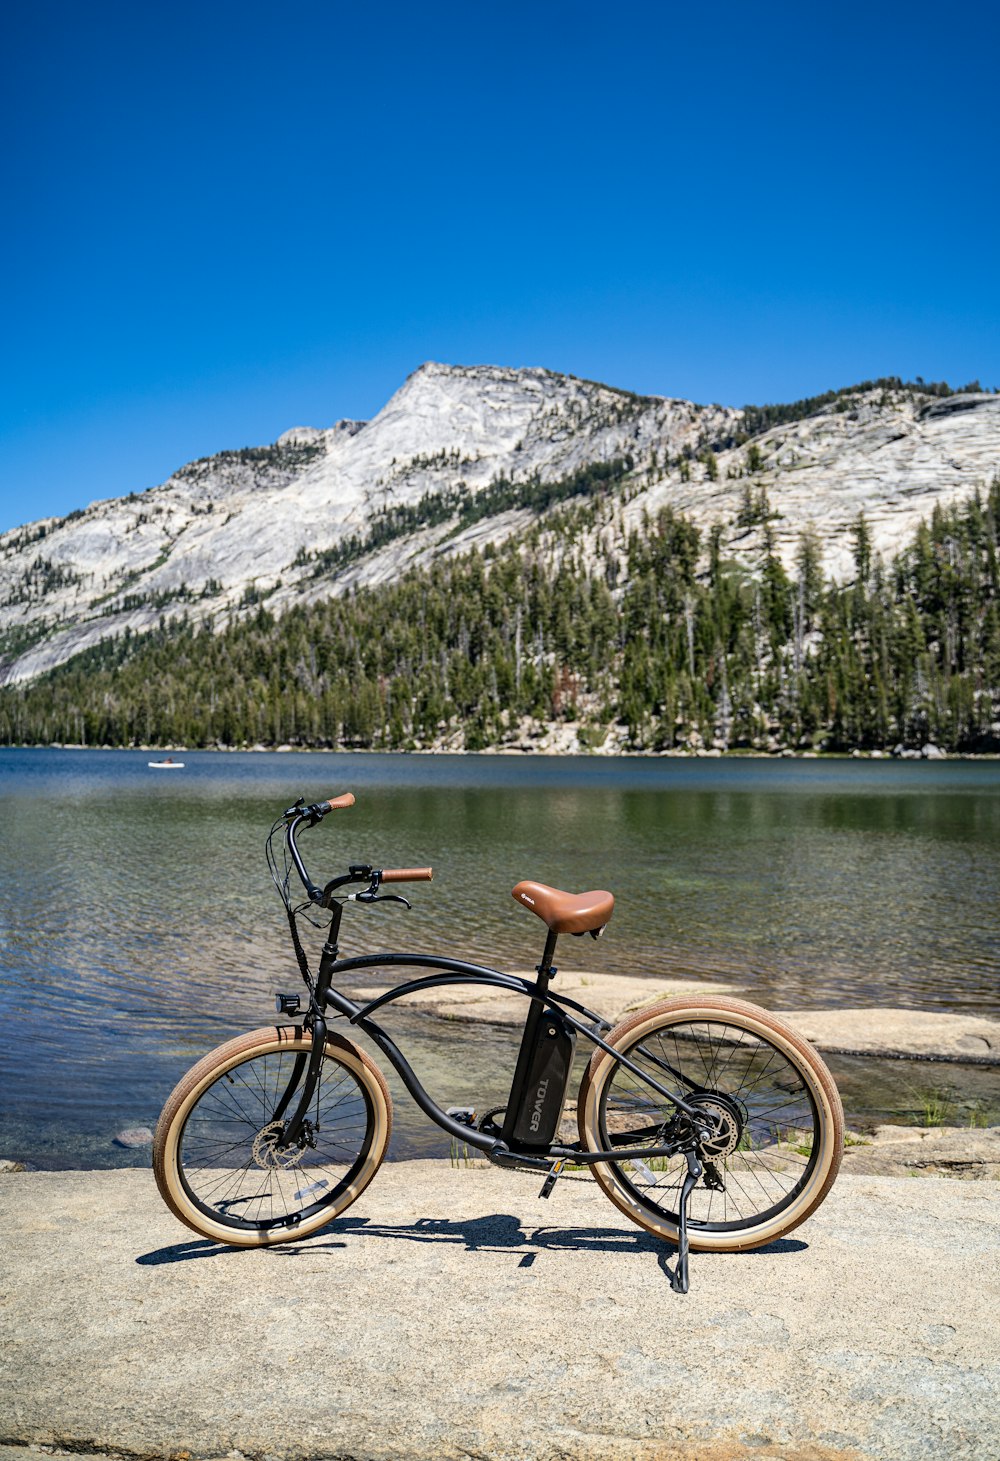 black bicycle on brown wooden dock near lake during daytime